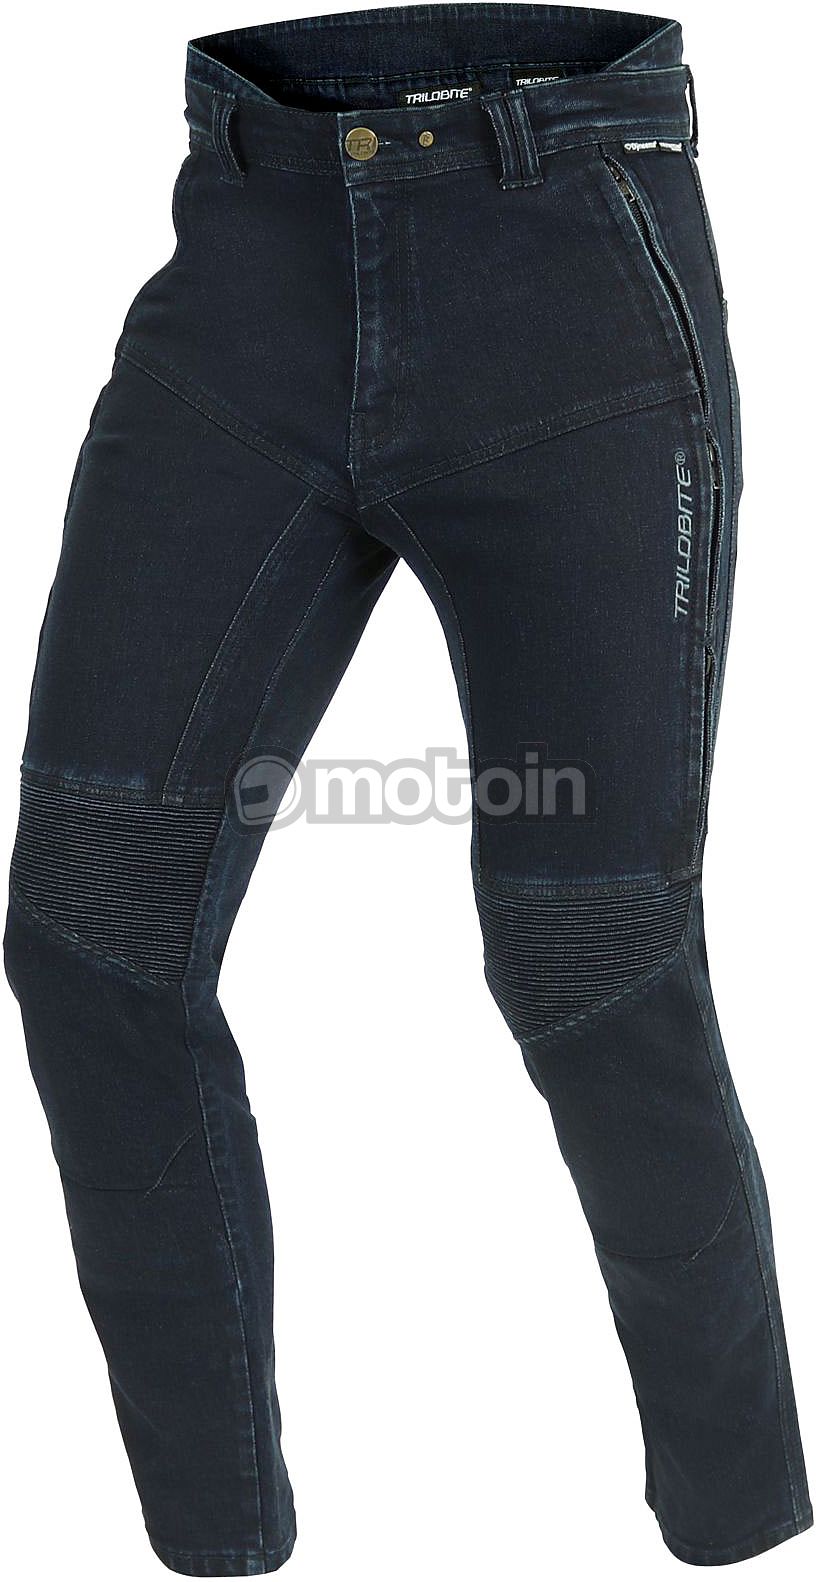 Trilobite Corsee, jeans